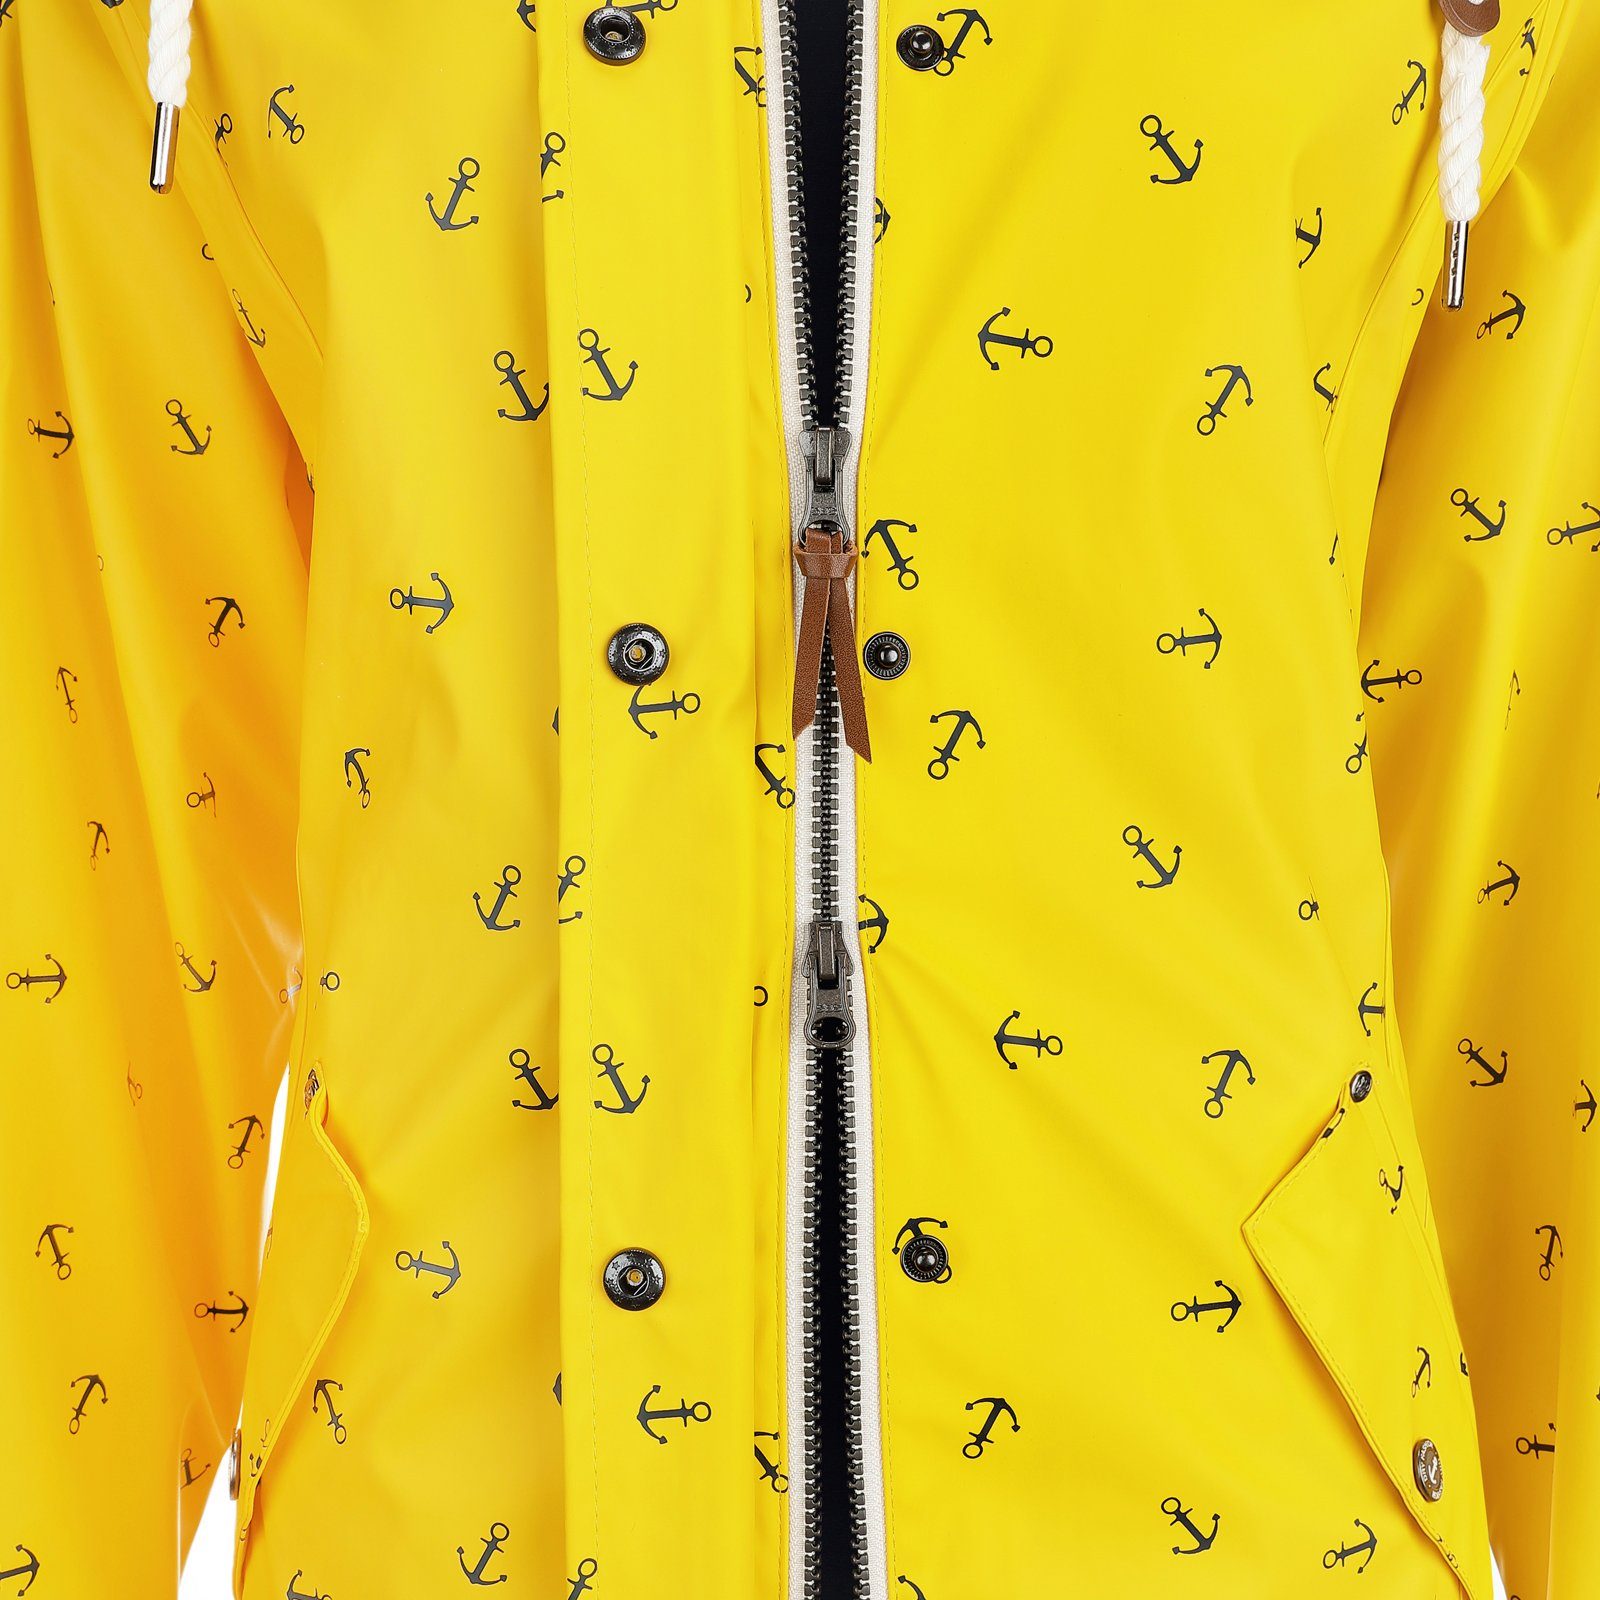 Dry Anker-Print Damen Fashion - mit Cuxhaven Regenmantel gelb Regenjacke wasserdicht Jacke Kapuze